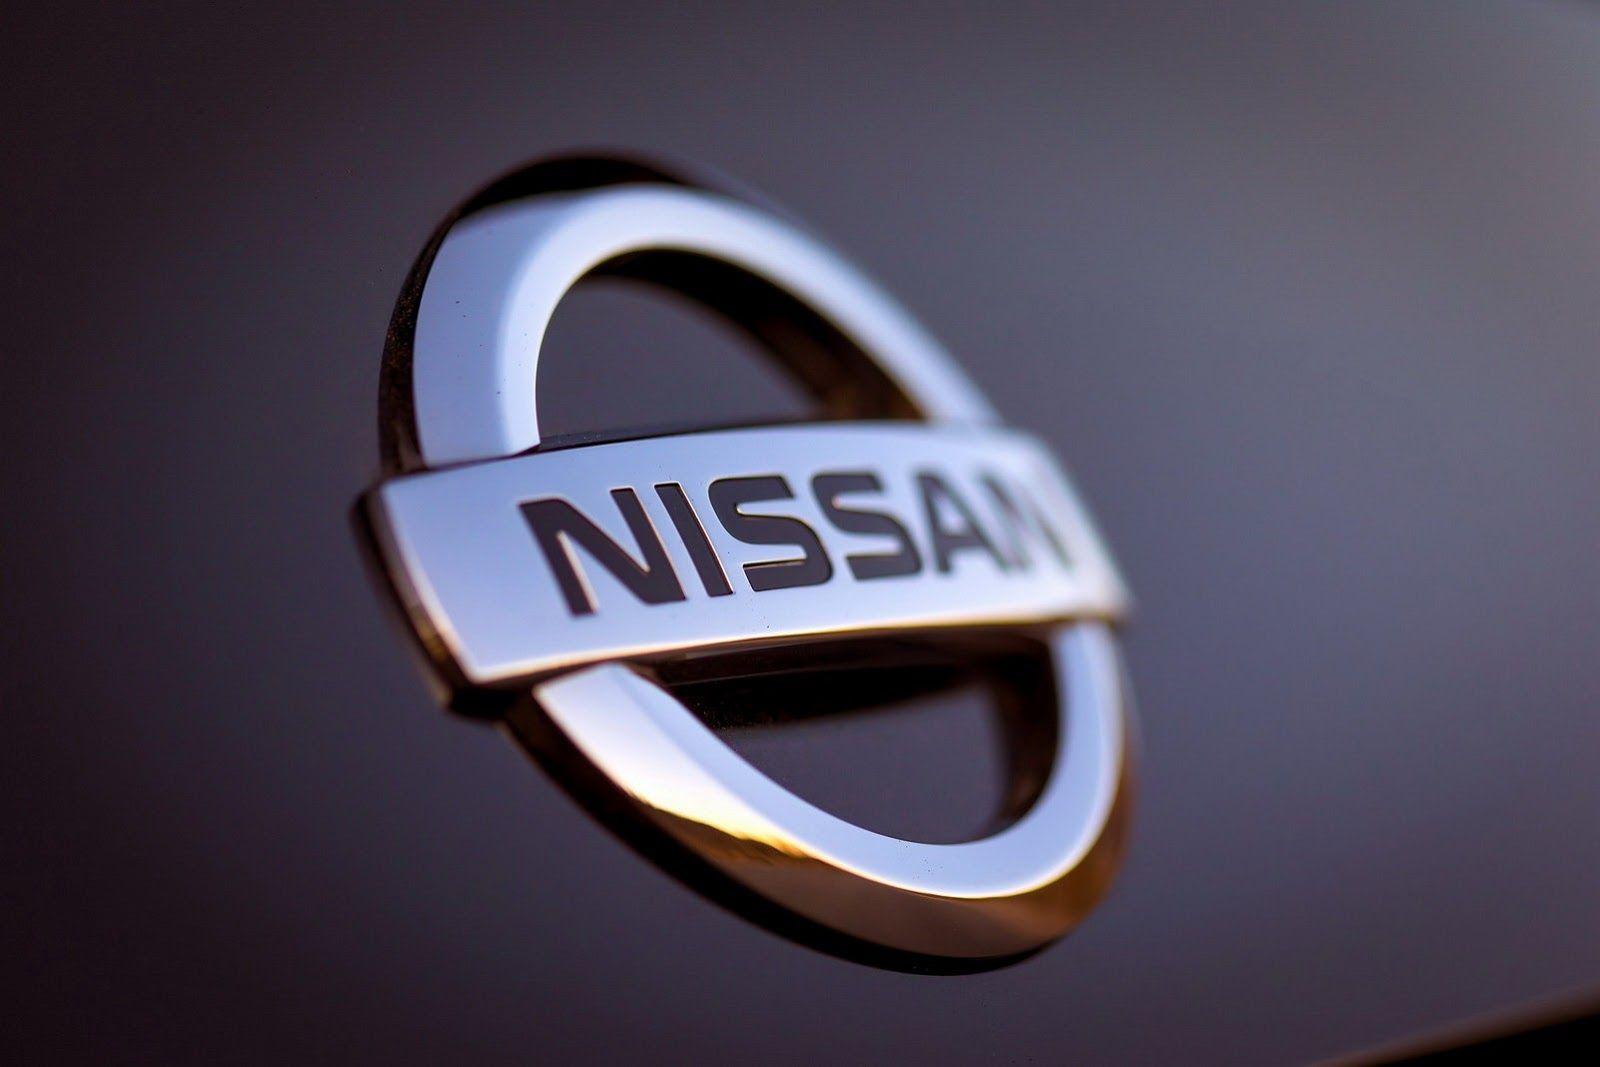 A Nissan már az energiatárolásban gondolkozik